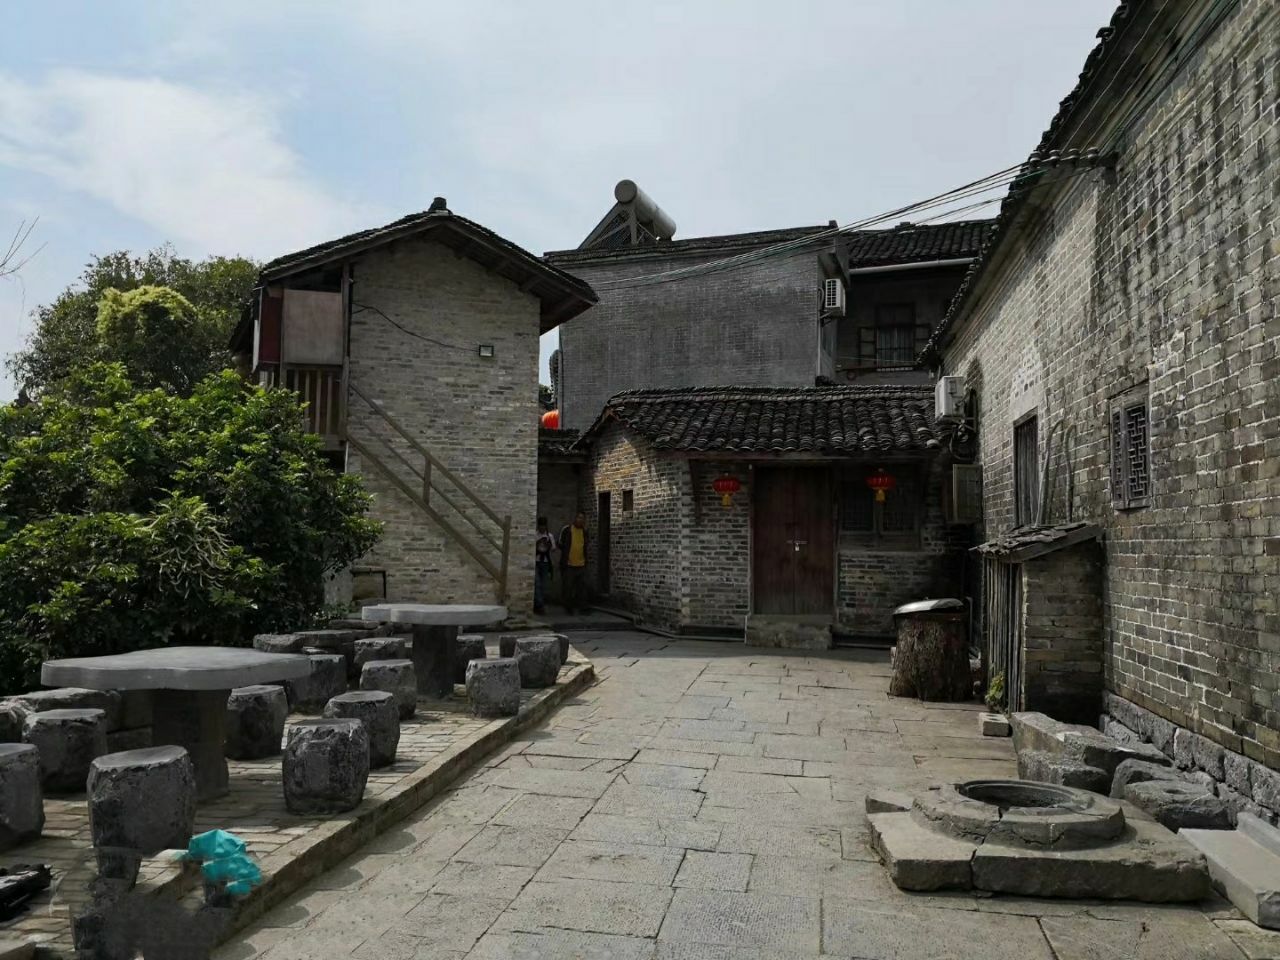 黄姚古镇里的郭家大院是一个比较主要的景点里面除了古建筑外还有古井